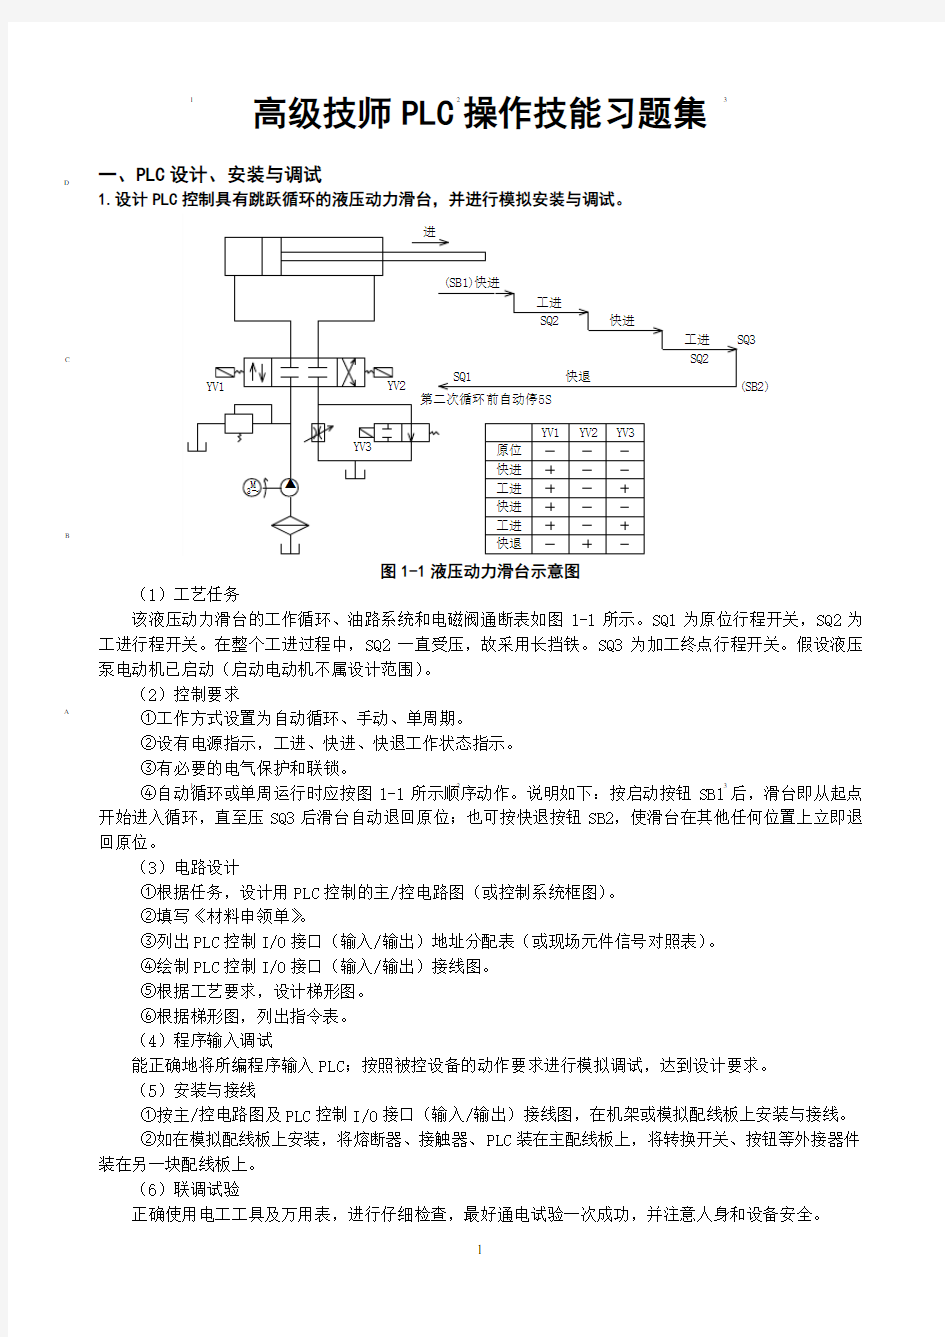 维修电工高级技师PLC操作技能习题测验集(00001)